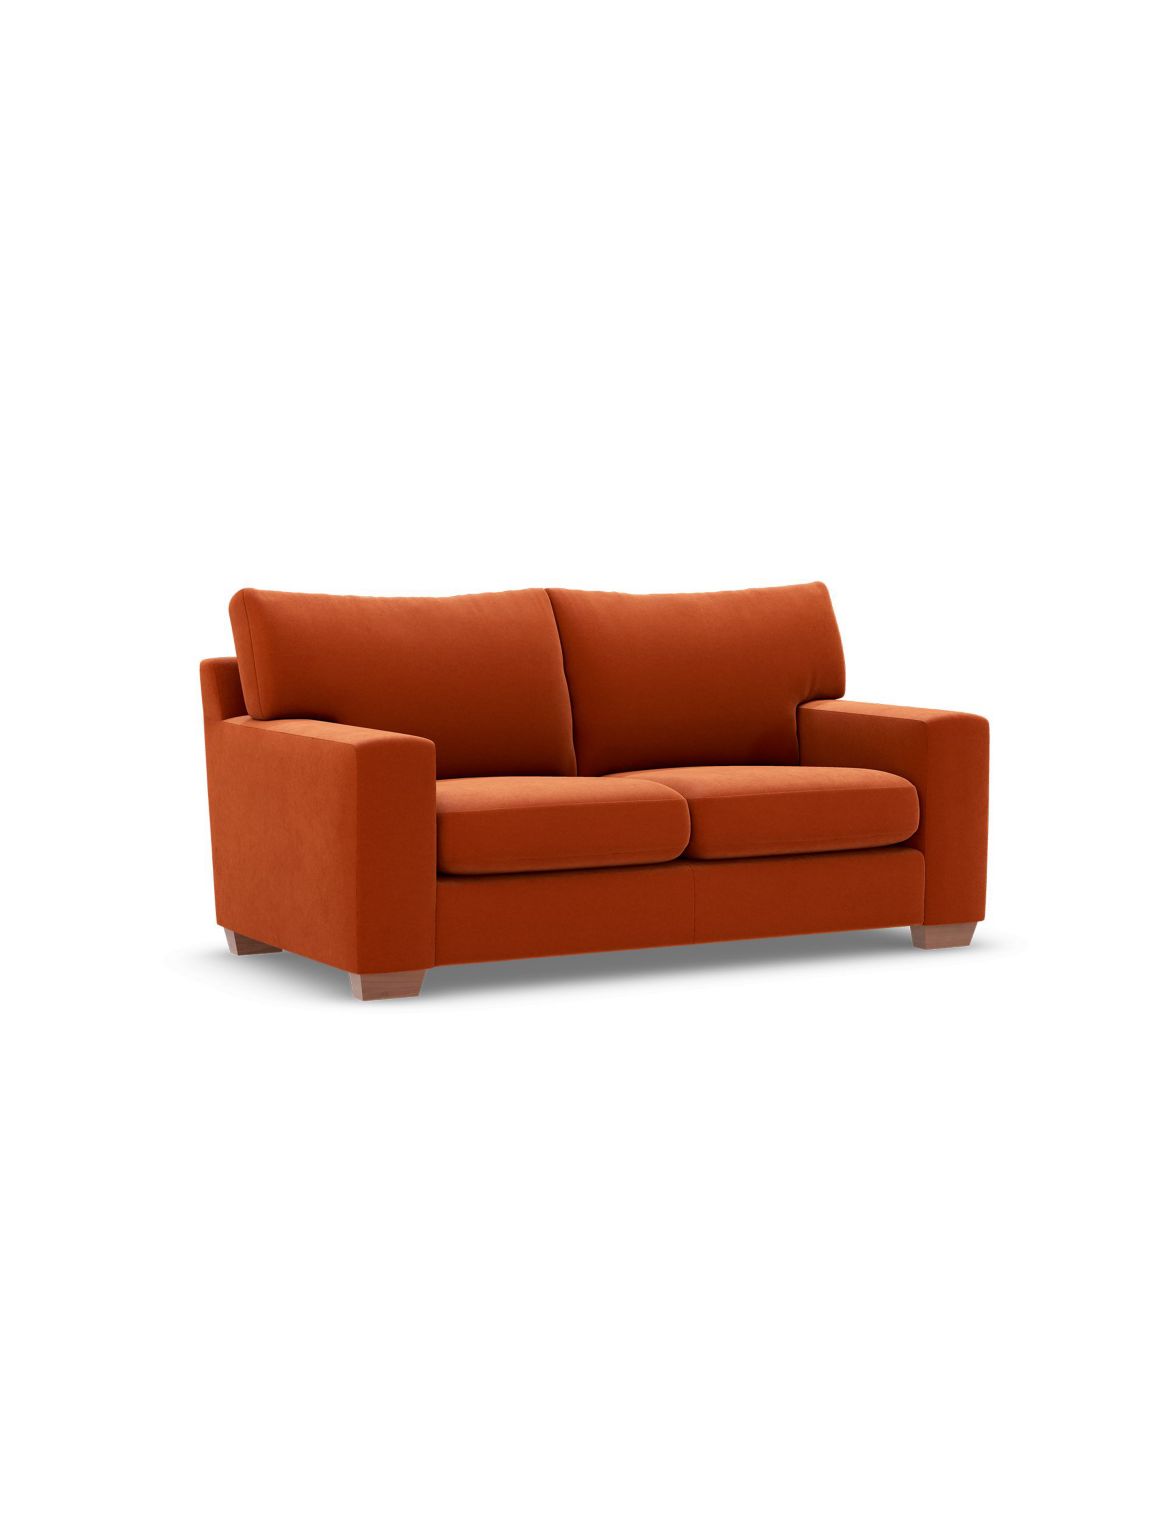 Alfie Small Sofa orange